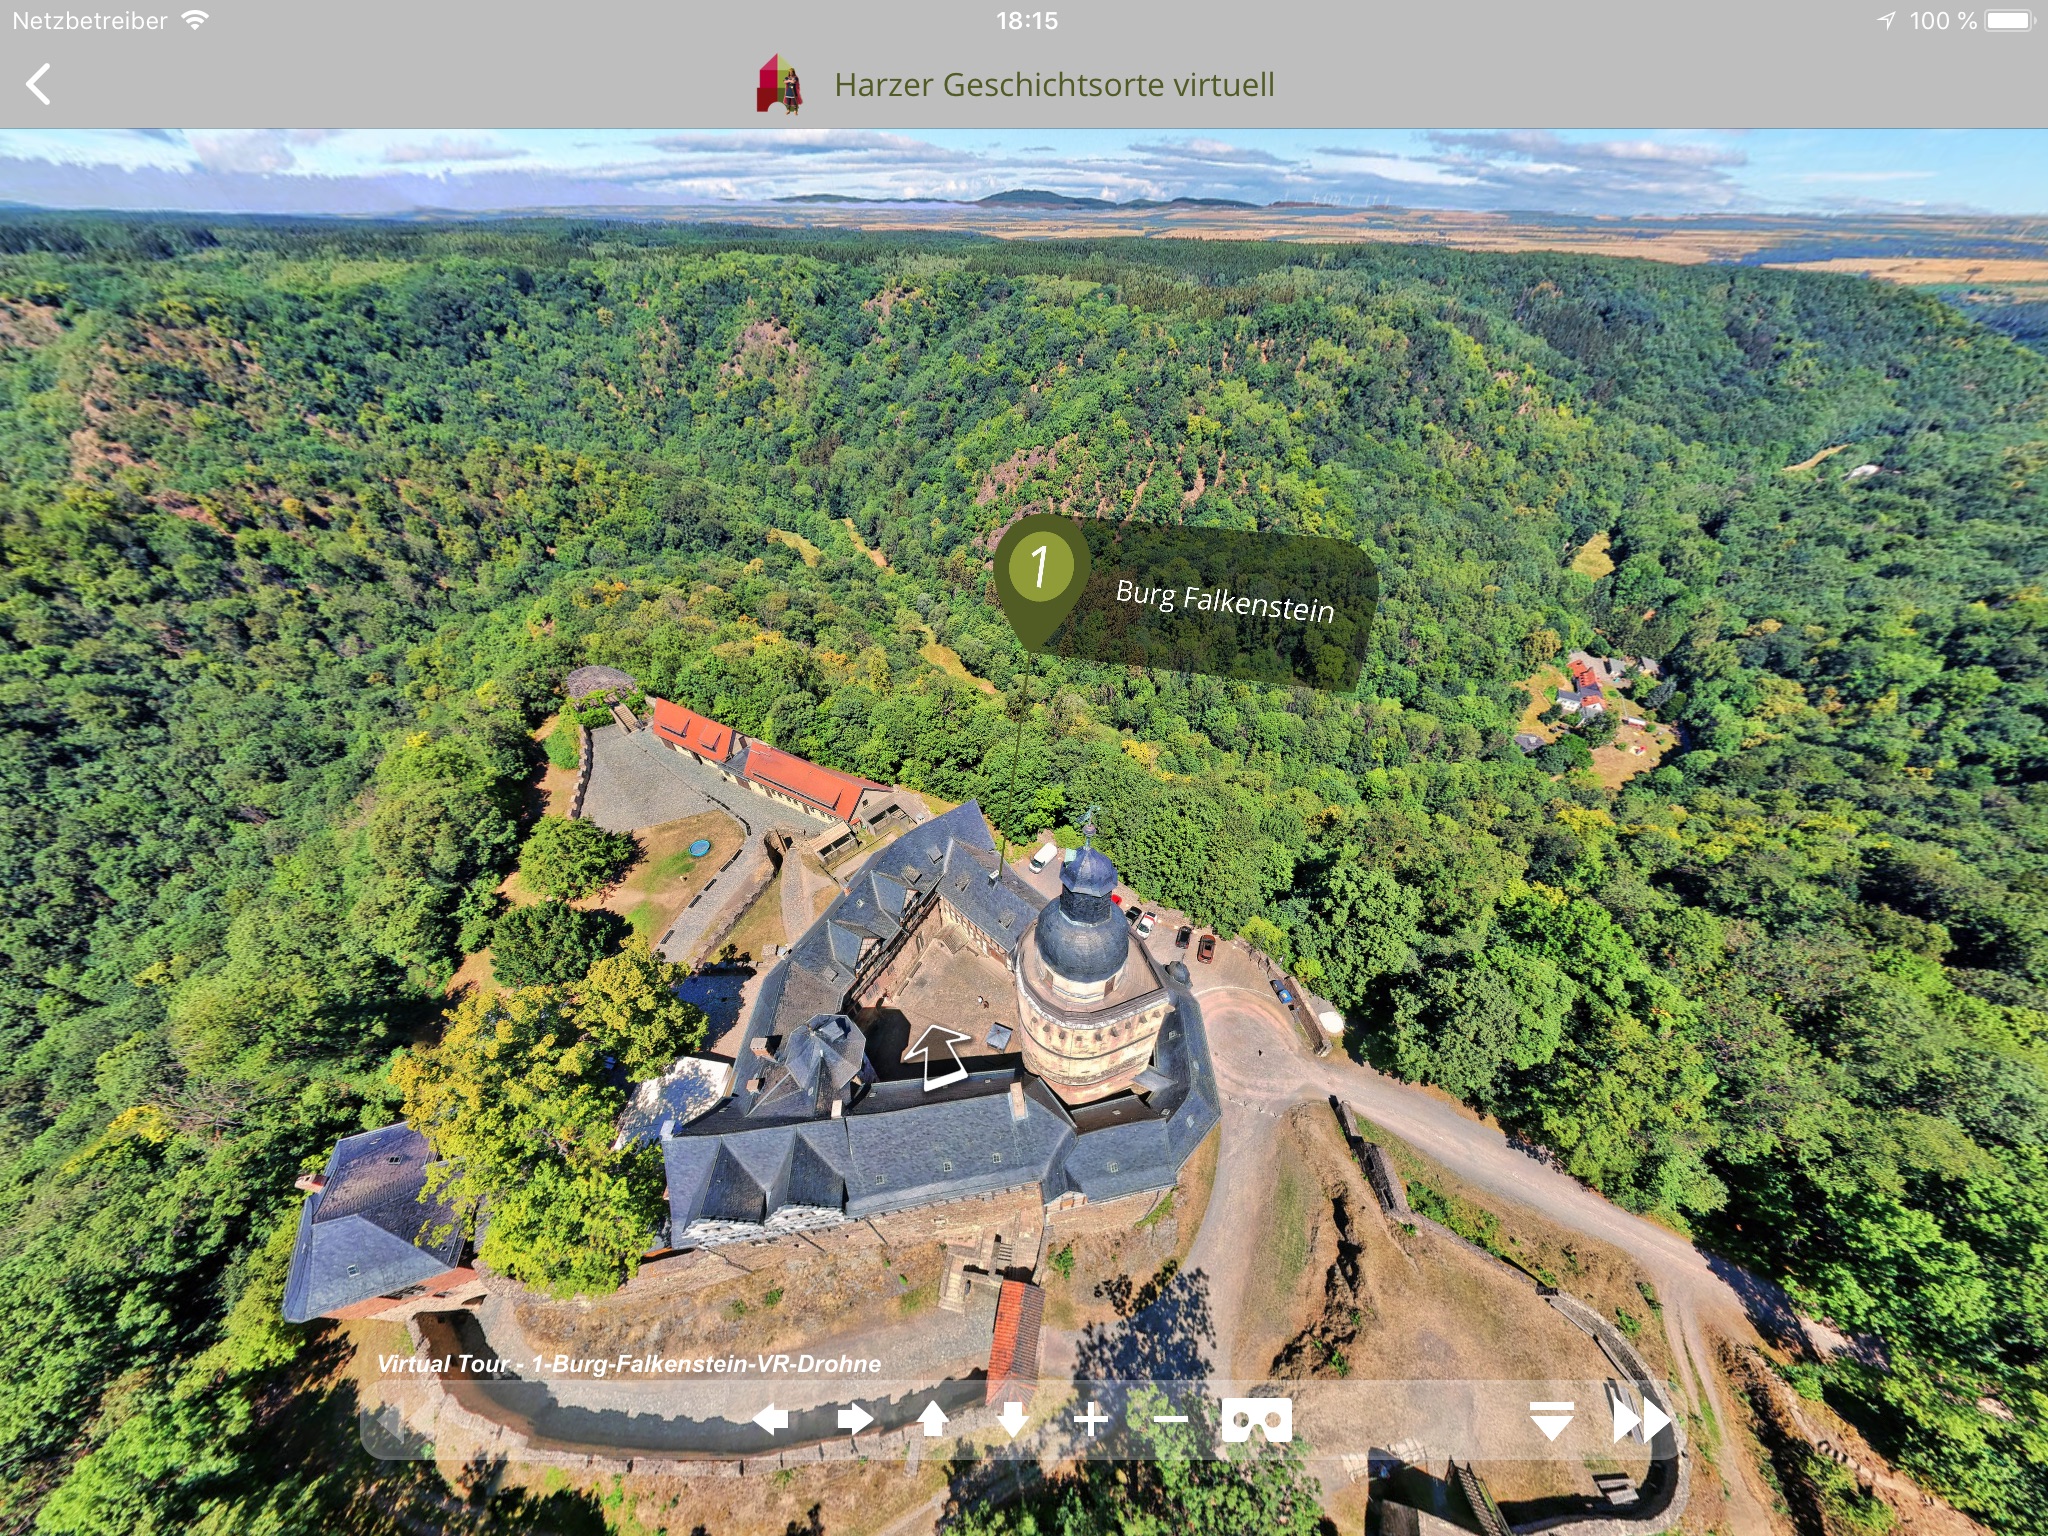 Harzer Geschichtsorte virtuell screenshot 4